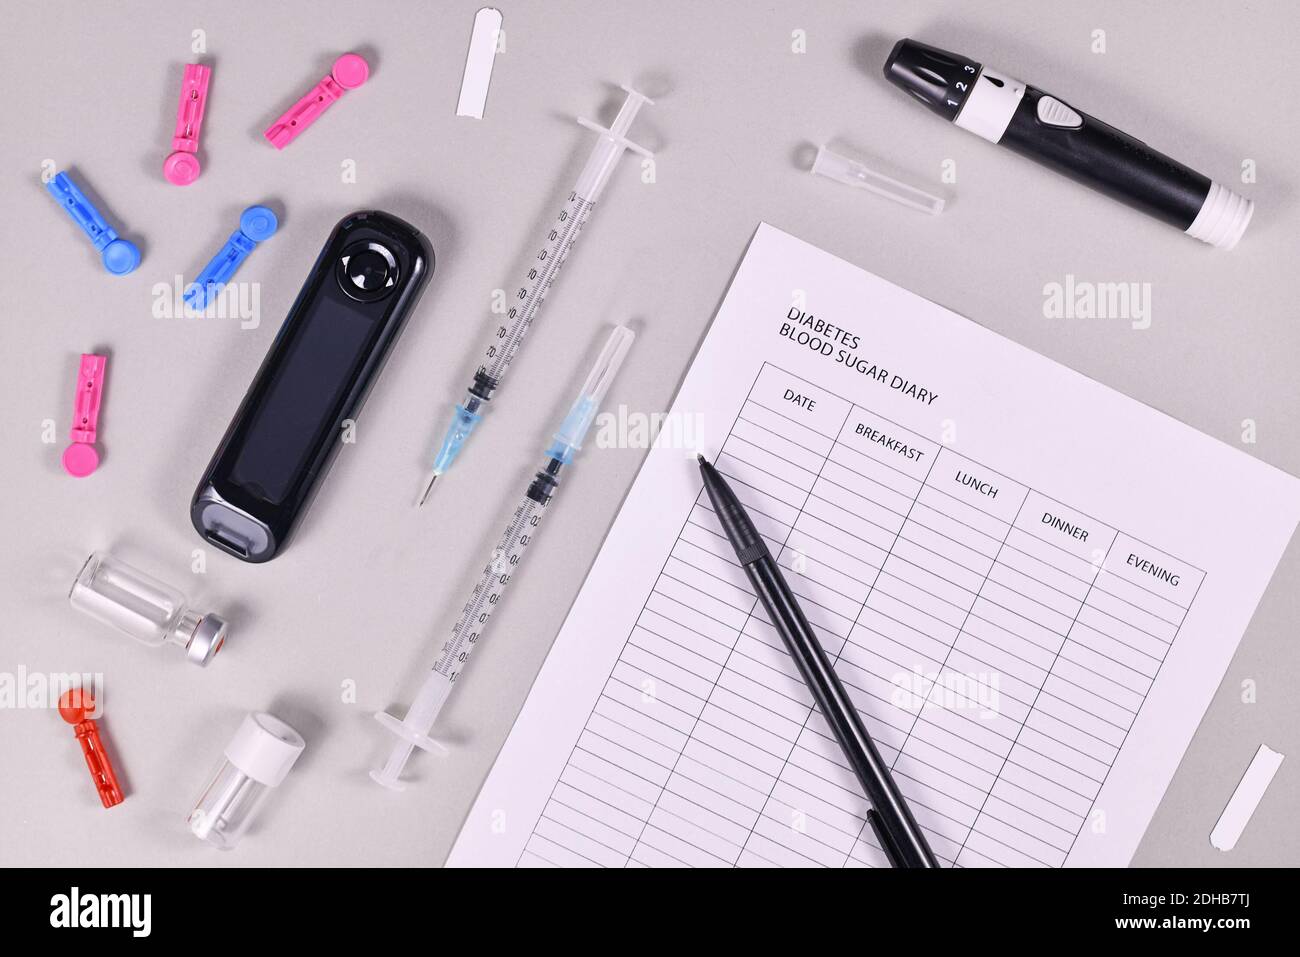 Journal de glycémie pour le diabète avec glucomètre, lancettes, bandes de tests et dispositif de lancing sur fond gris Banque D'Images